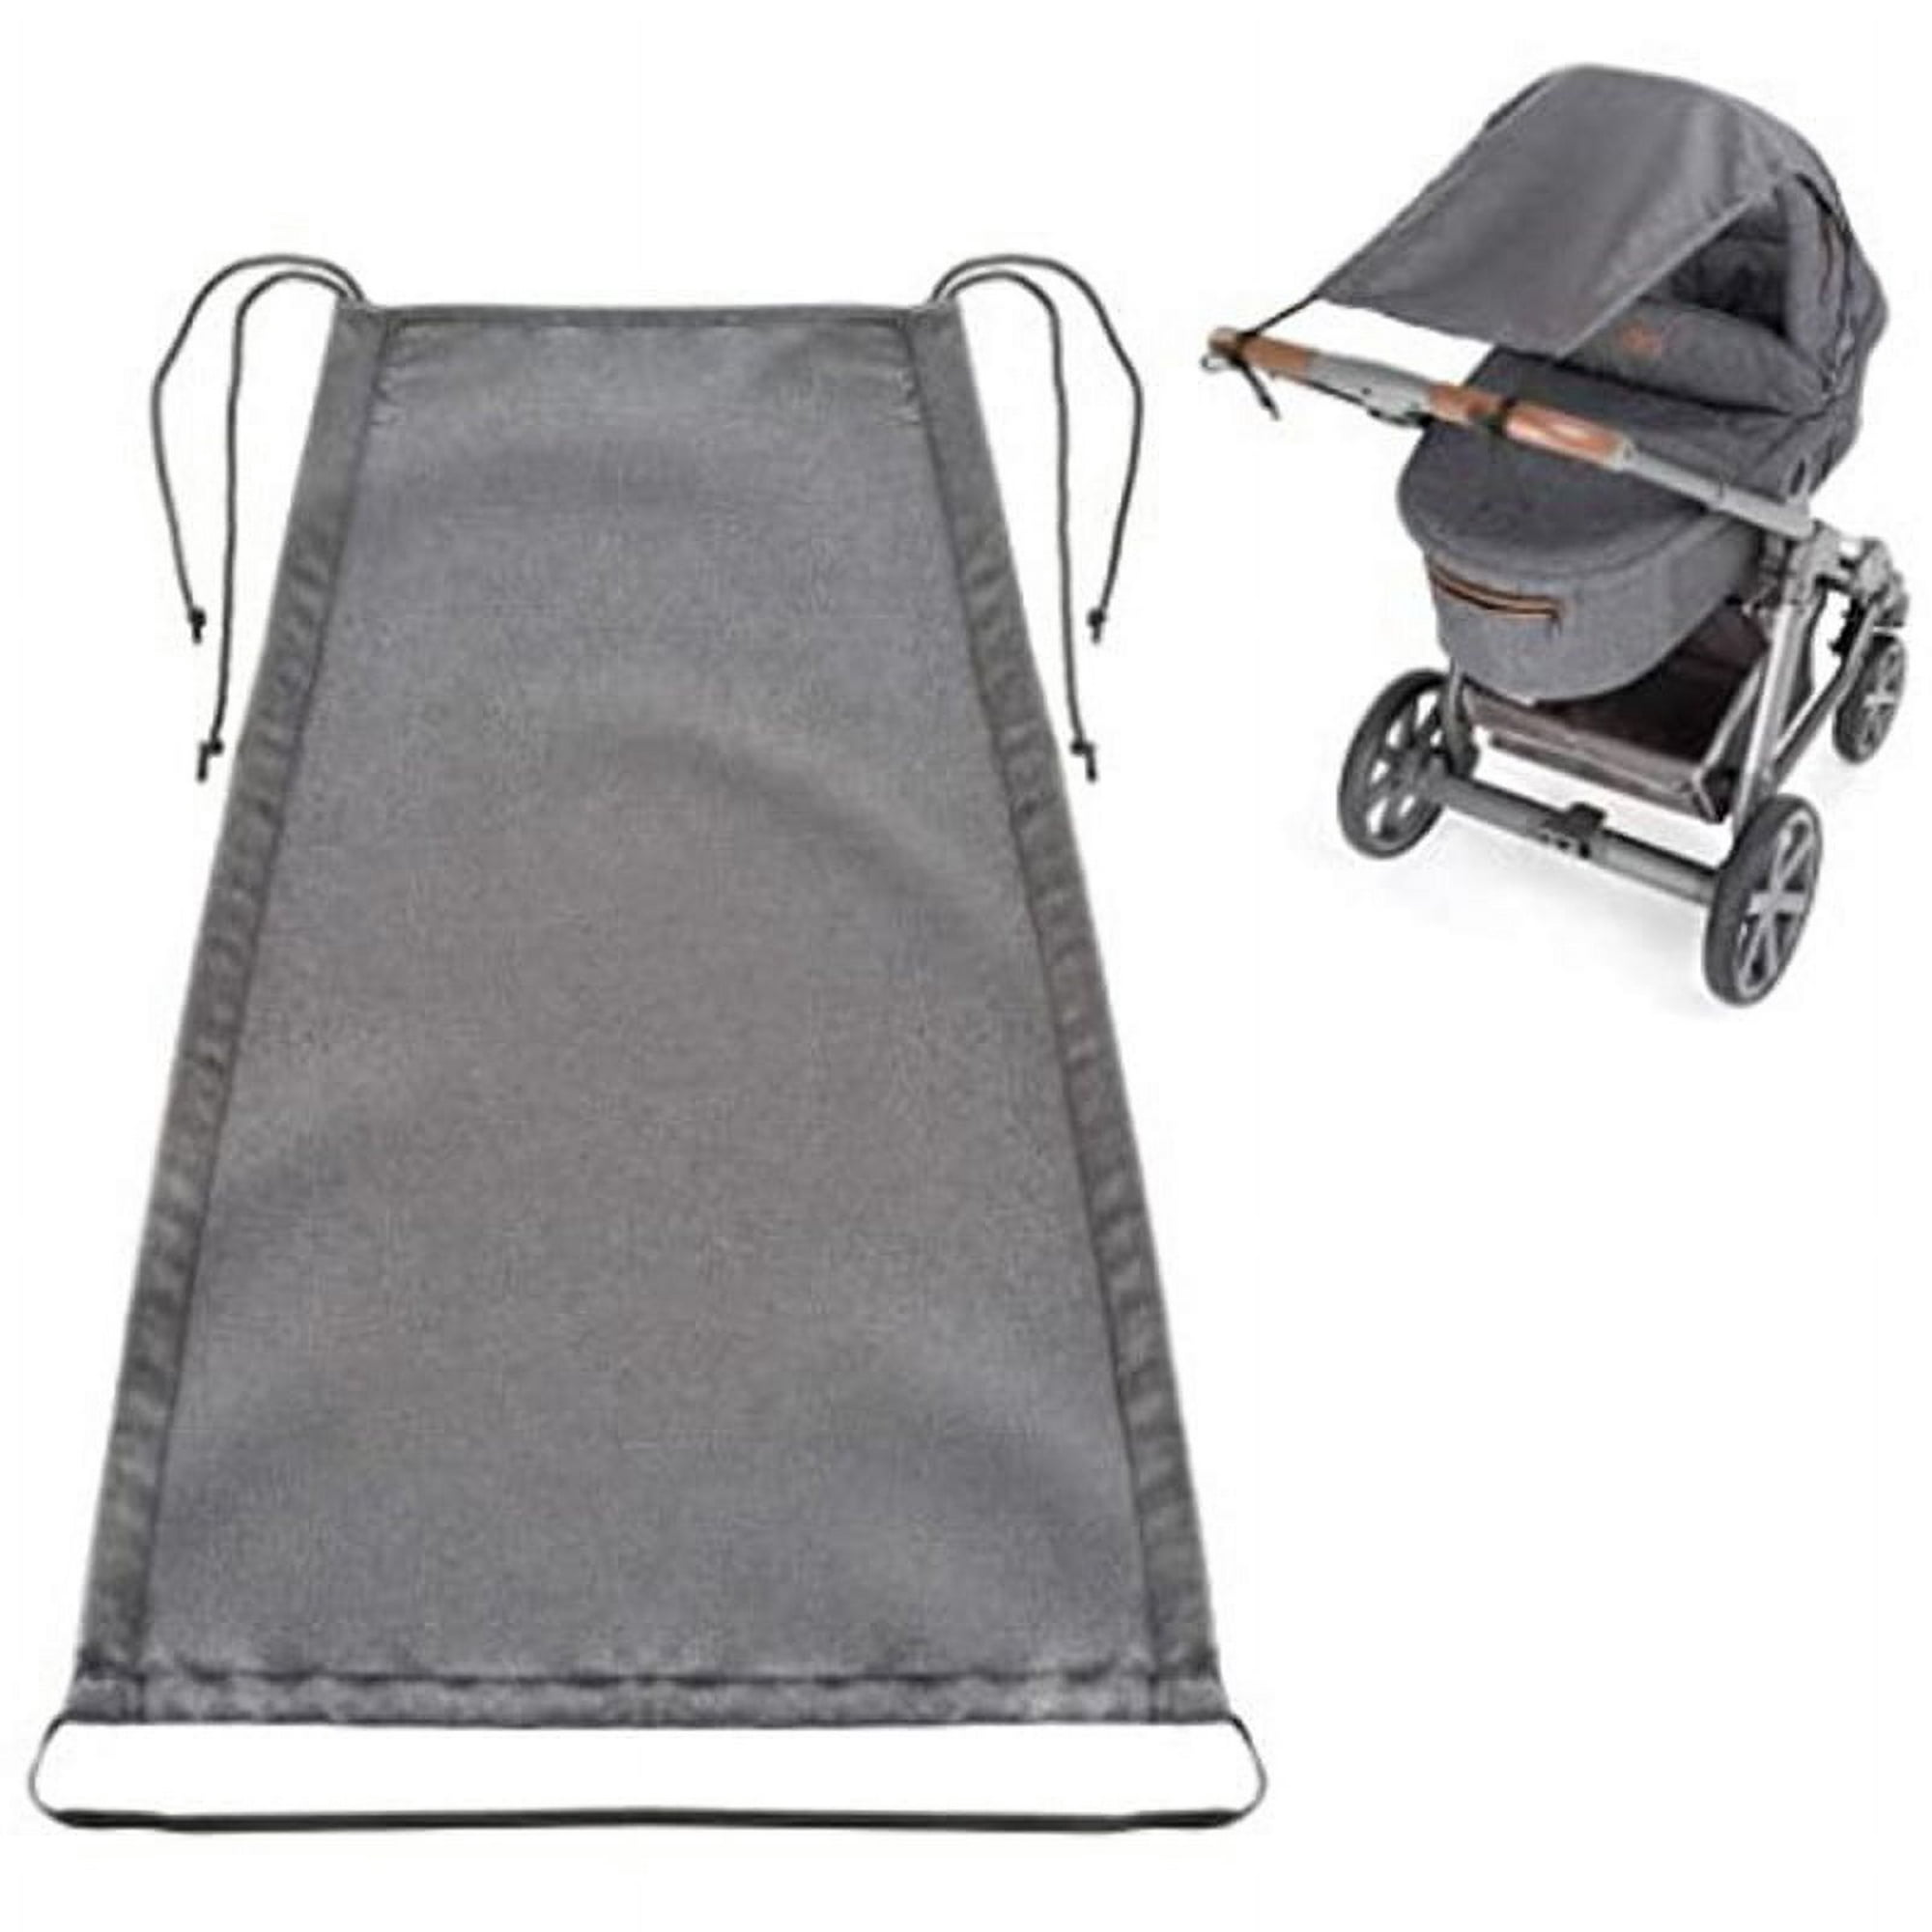 Toldo universal para cochecito de bebé, toldo de protección UV, para  asiento de automóvil, cochecito, parasol para cochecito de bebé, protector  solar